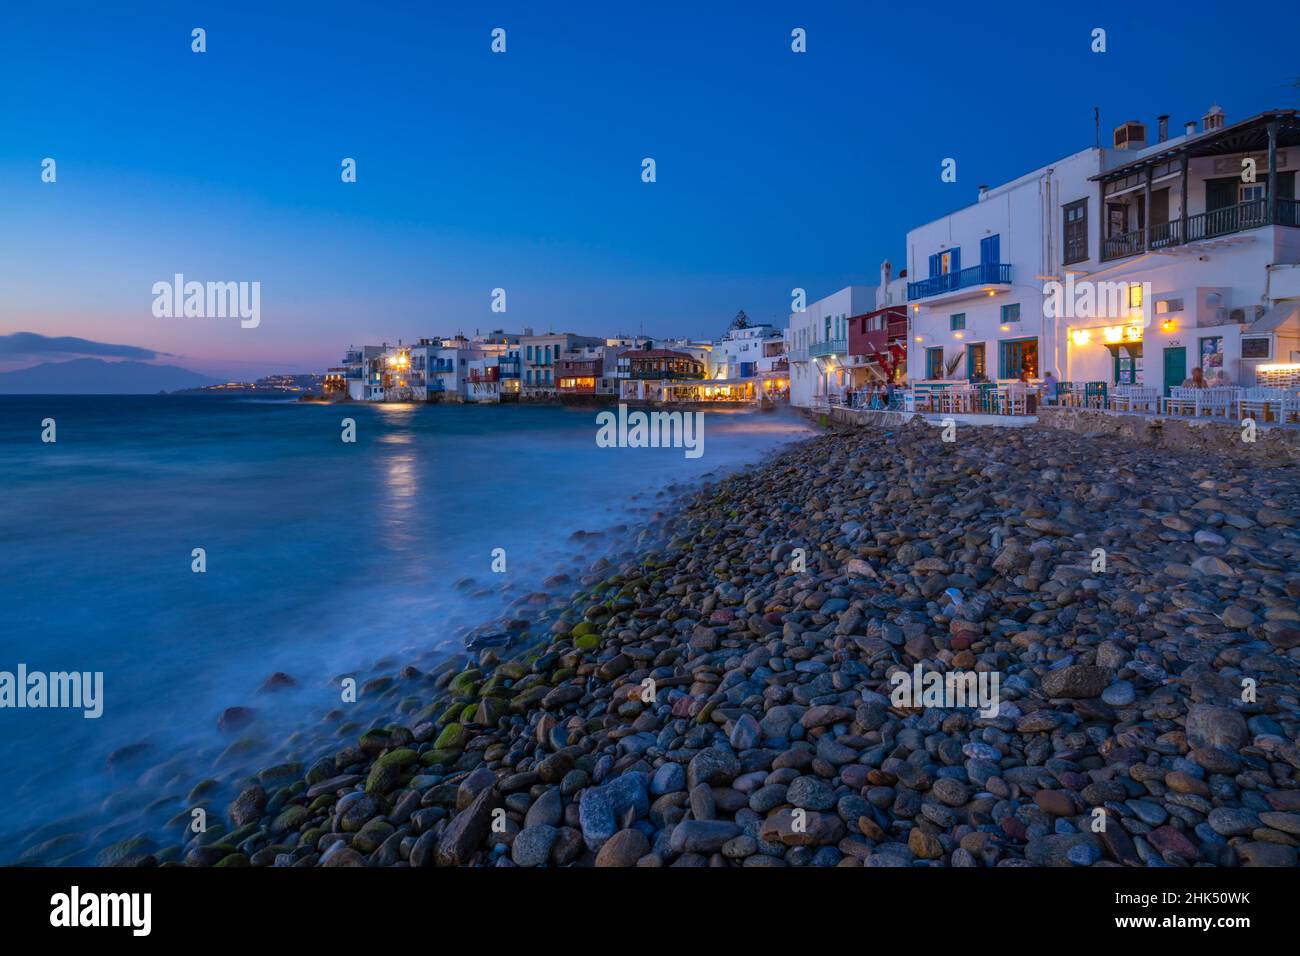 Blick auf Restaurants und Kiesstrand in Little Venice in Mykonos Stadt bei Nacht, Mykonos, Kykladen Inseln, griechische Inseln, Ägäis, Griechenland, Europa Stockfoto